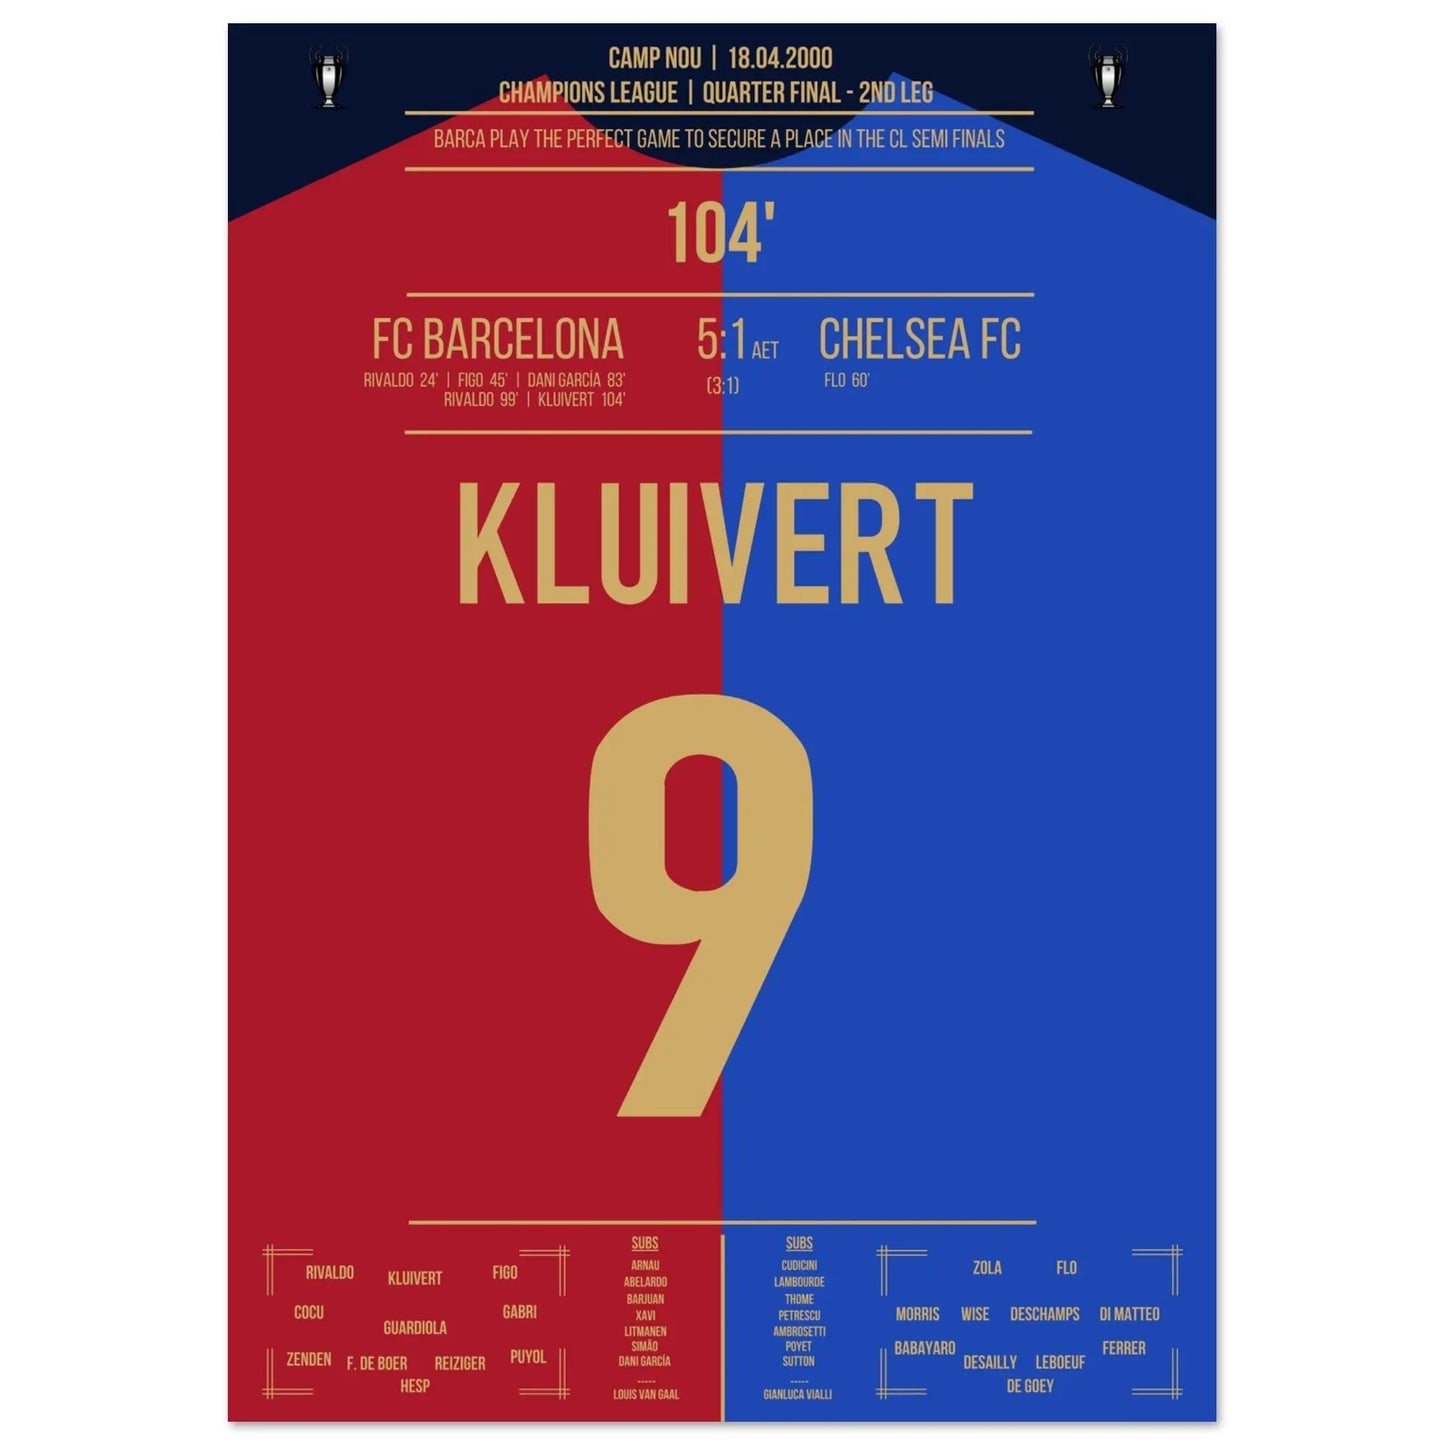 Kluivert's Tor in Barca's "Remontada" gegen Chelsea in 2000